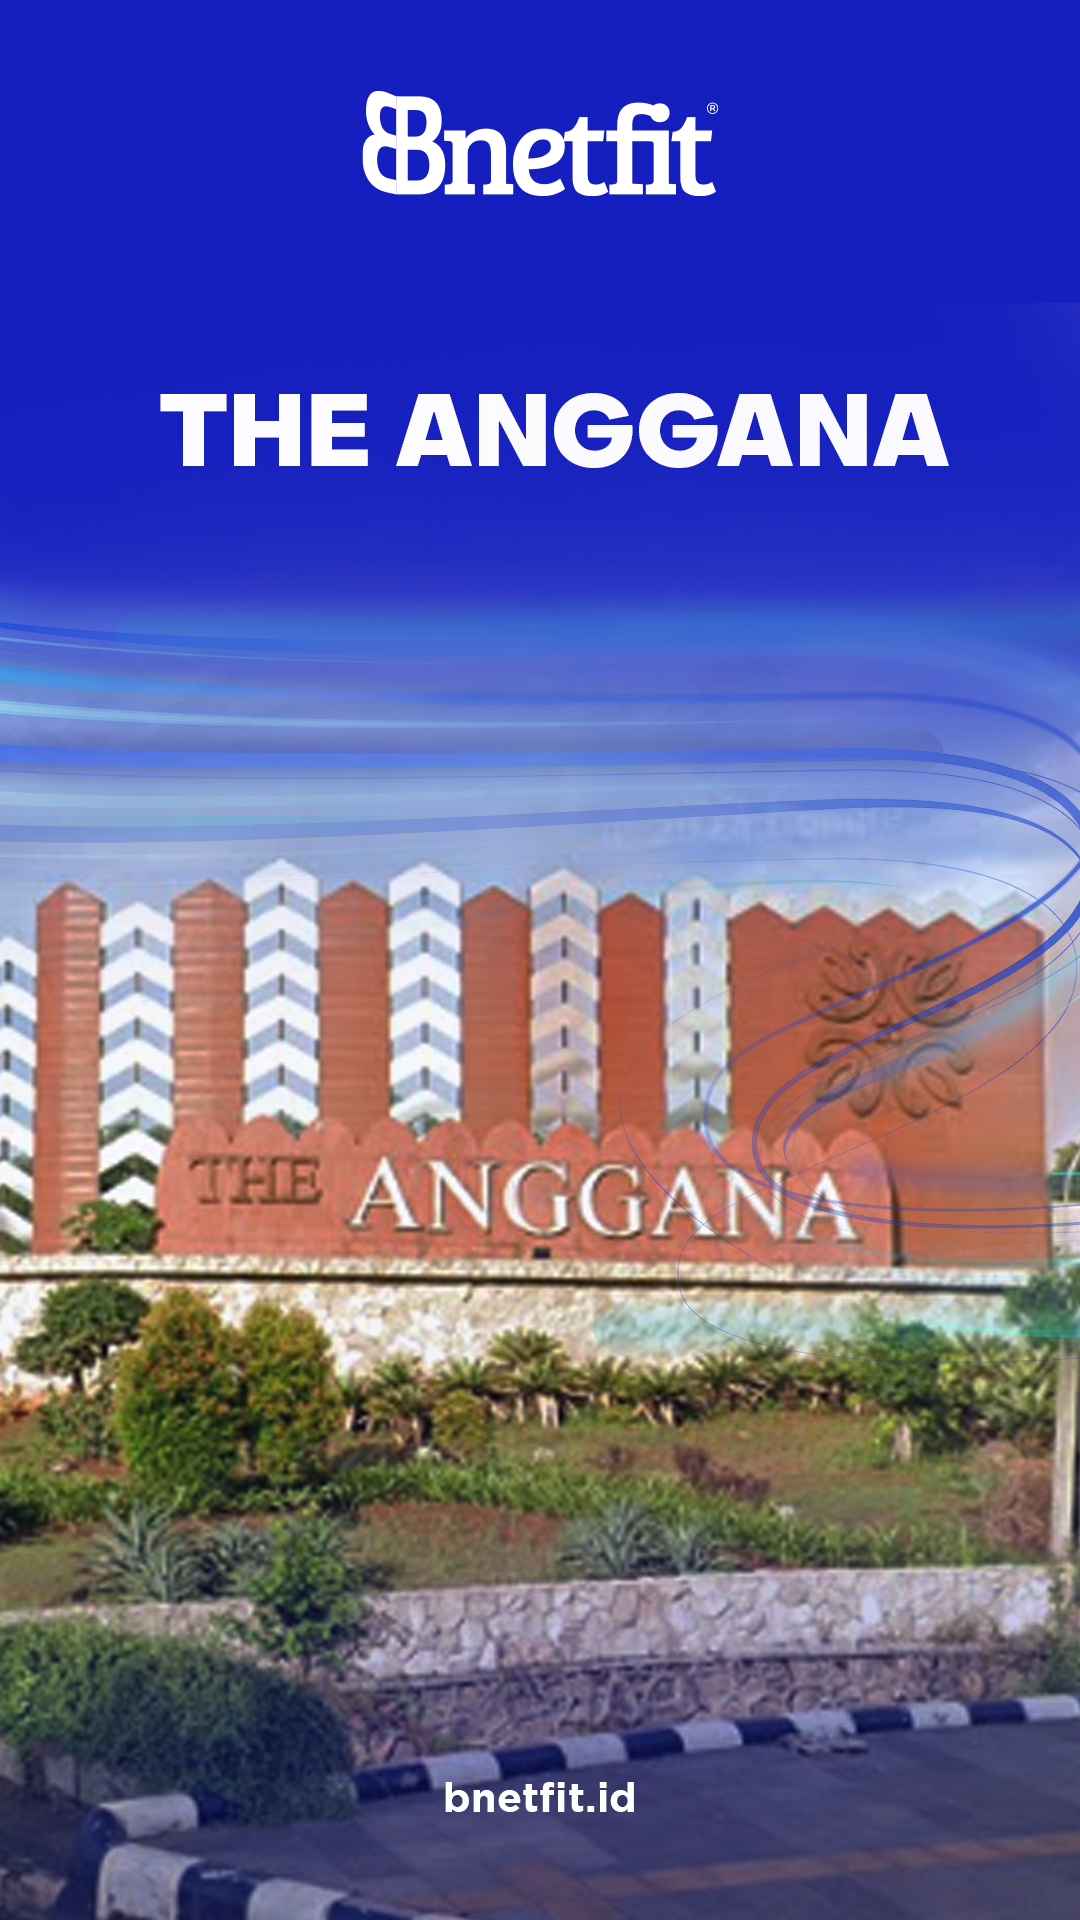 The Anggana Village